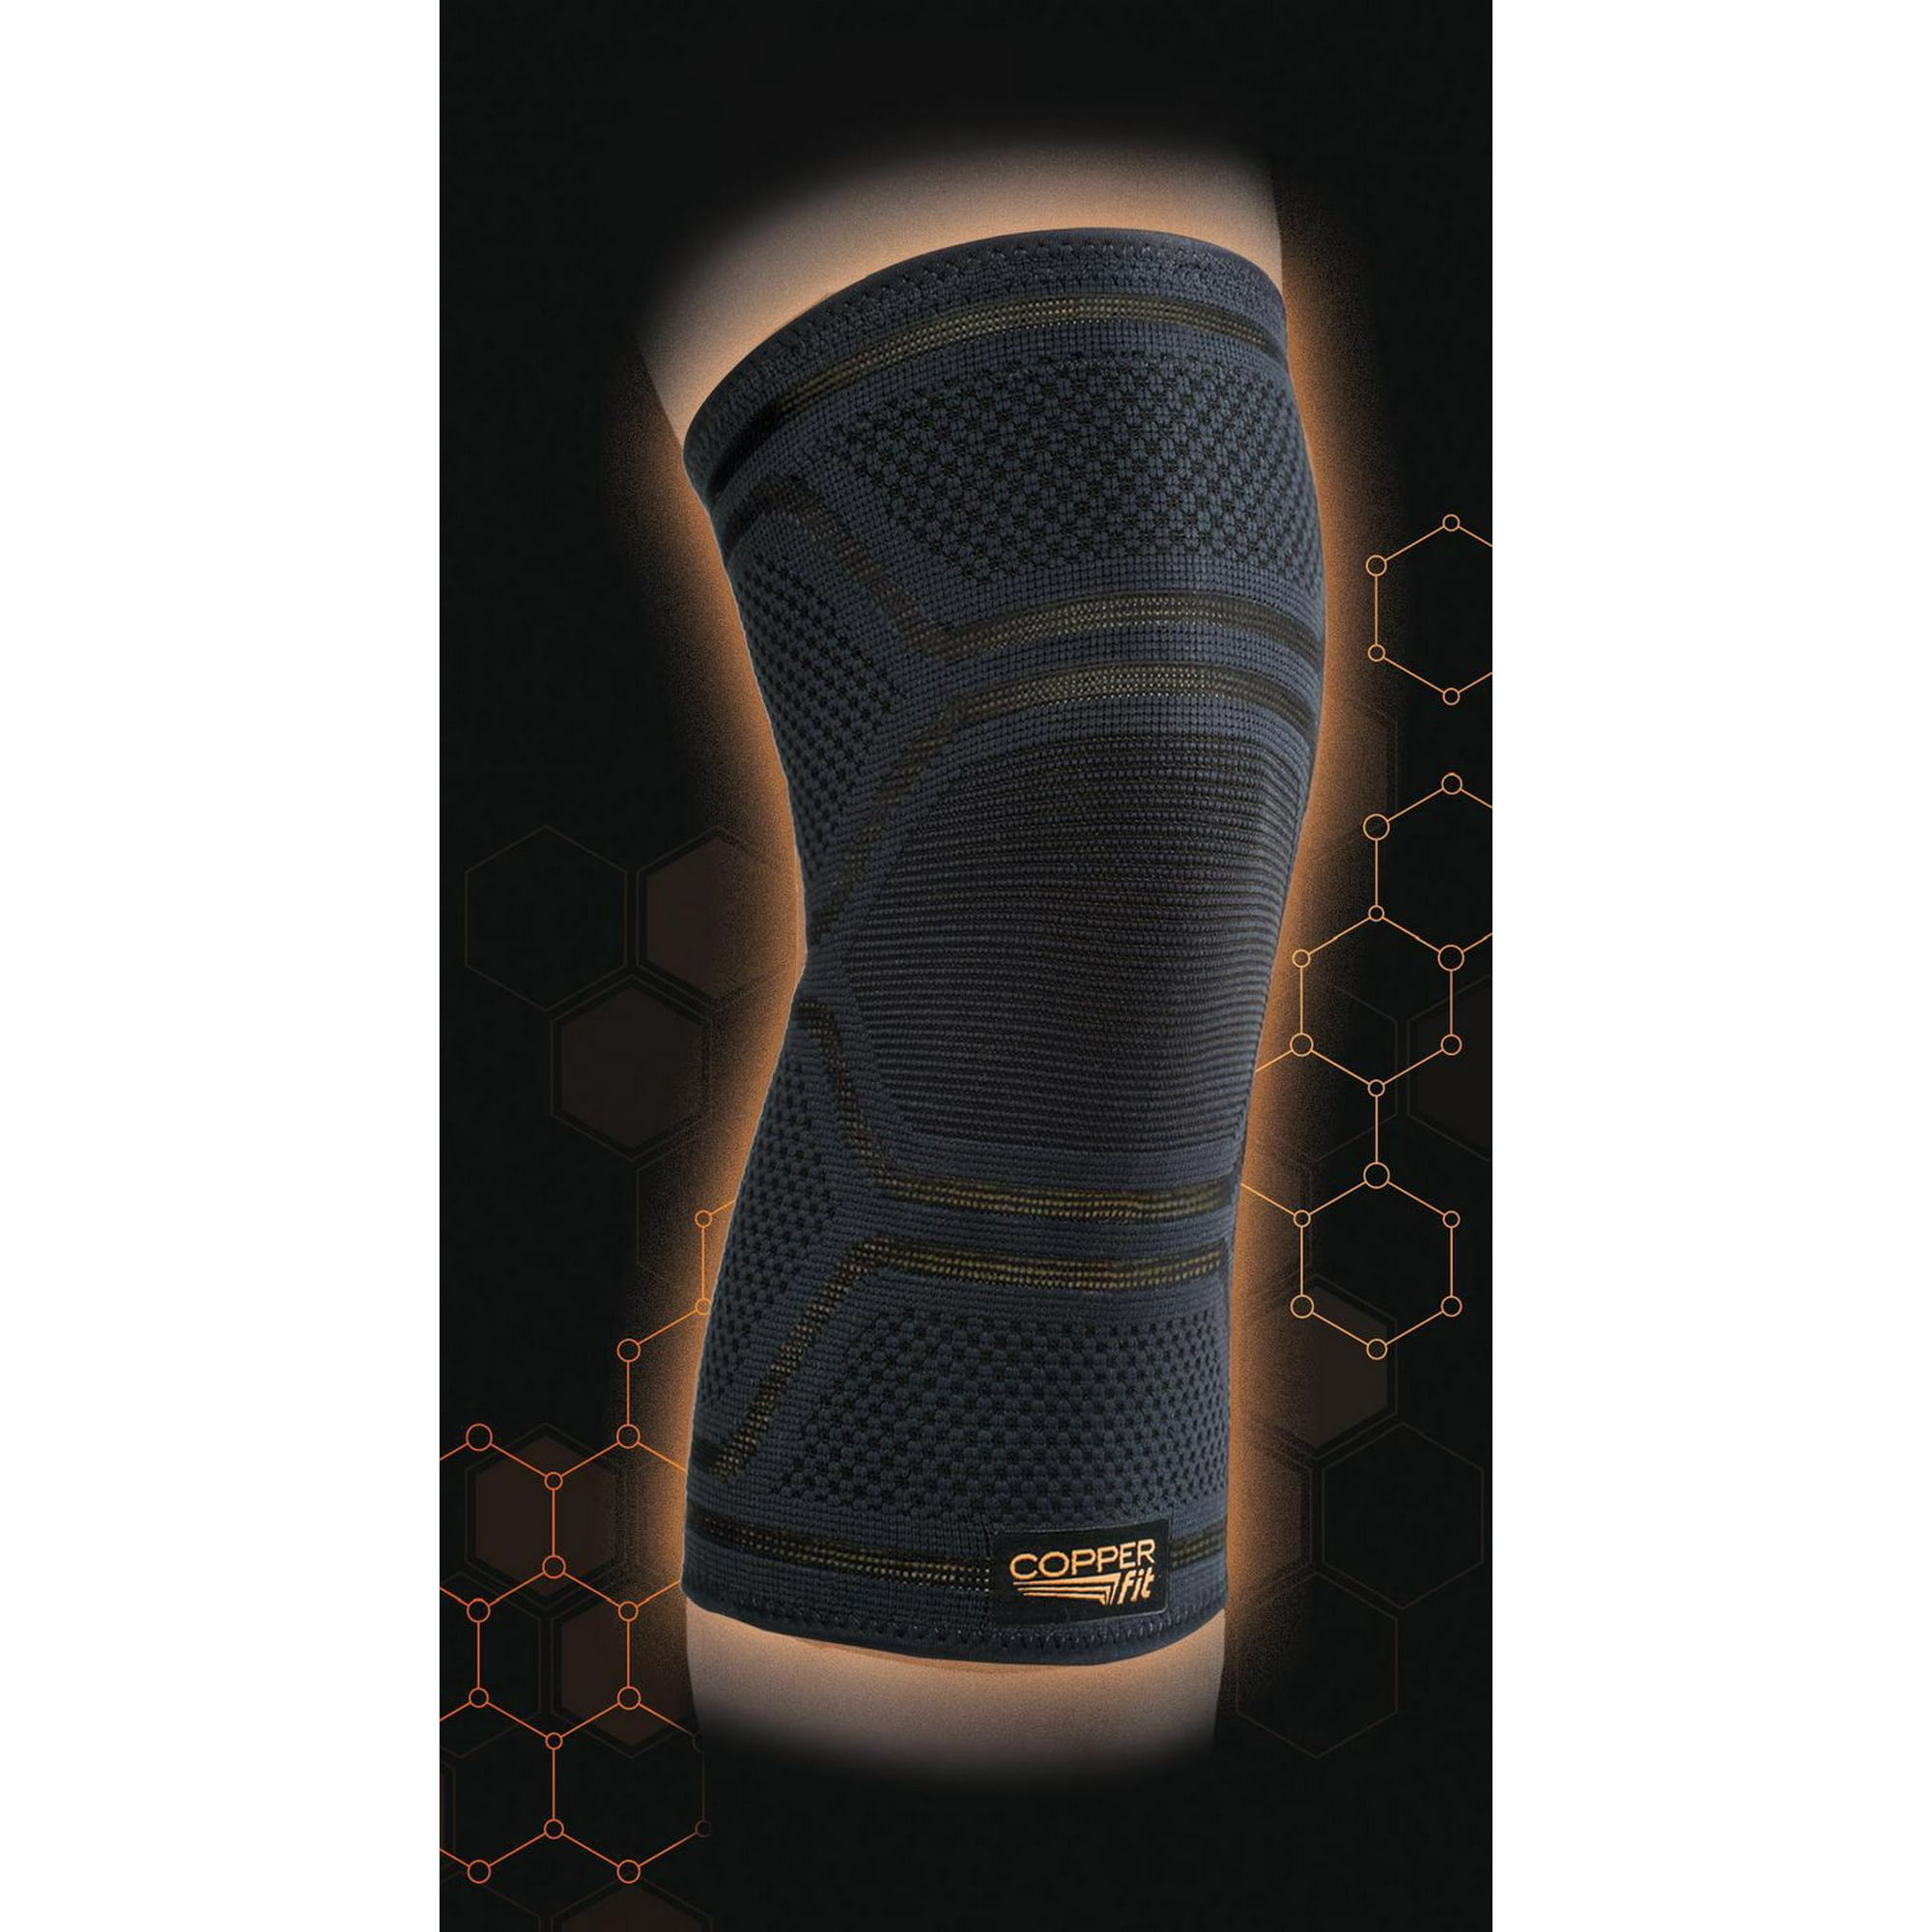 Copper Joe Knee Compression Sleeve- 1 Pair, Medium - Gerbes Super Markets